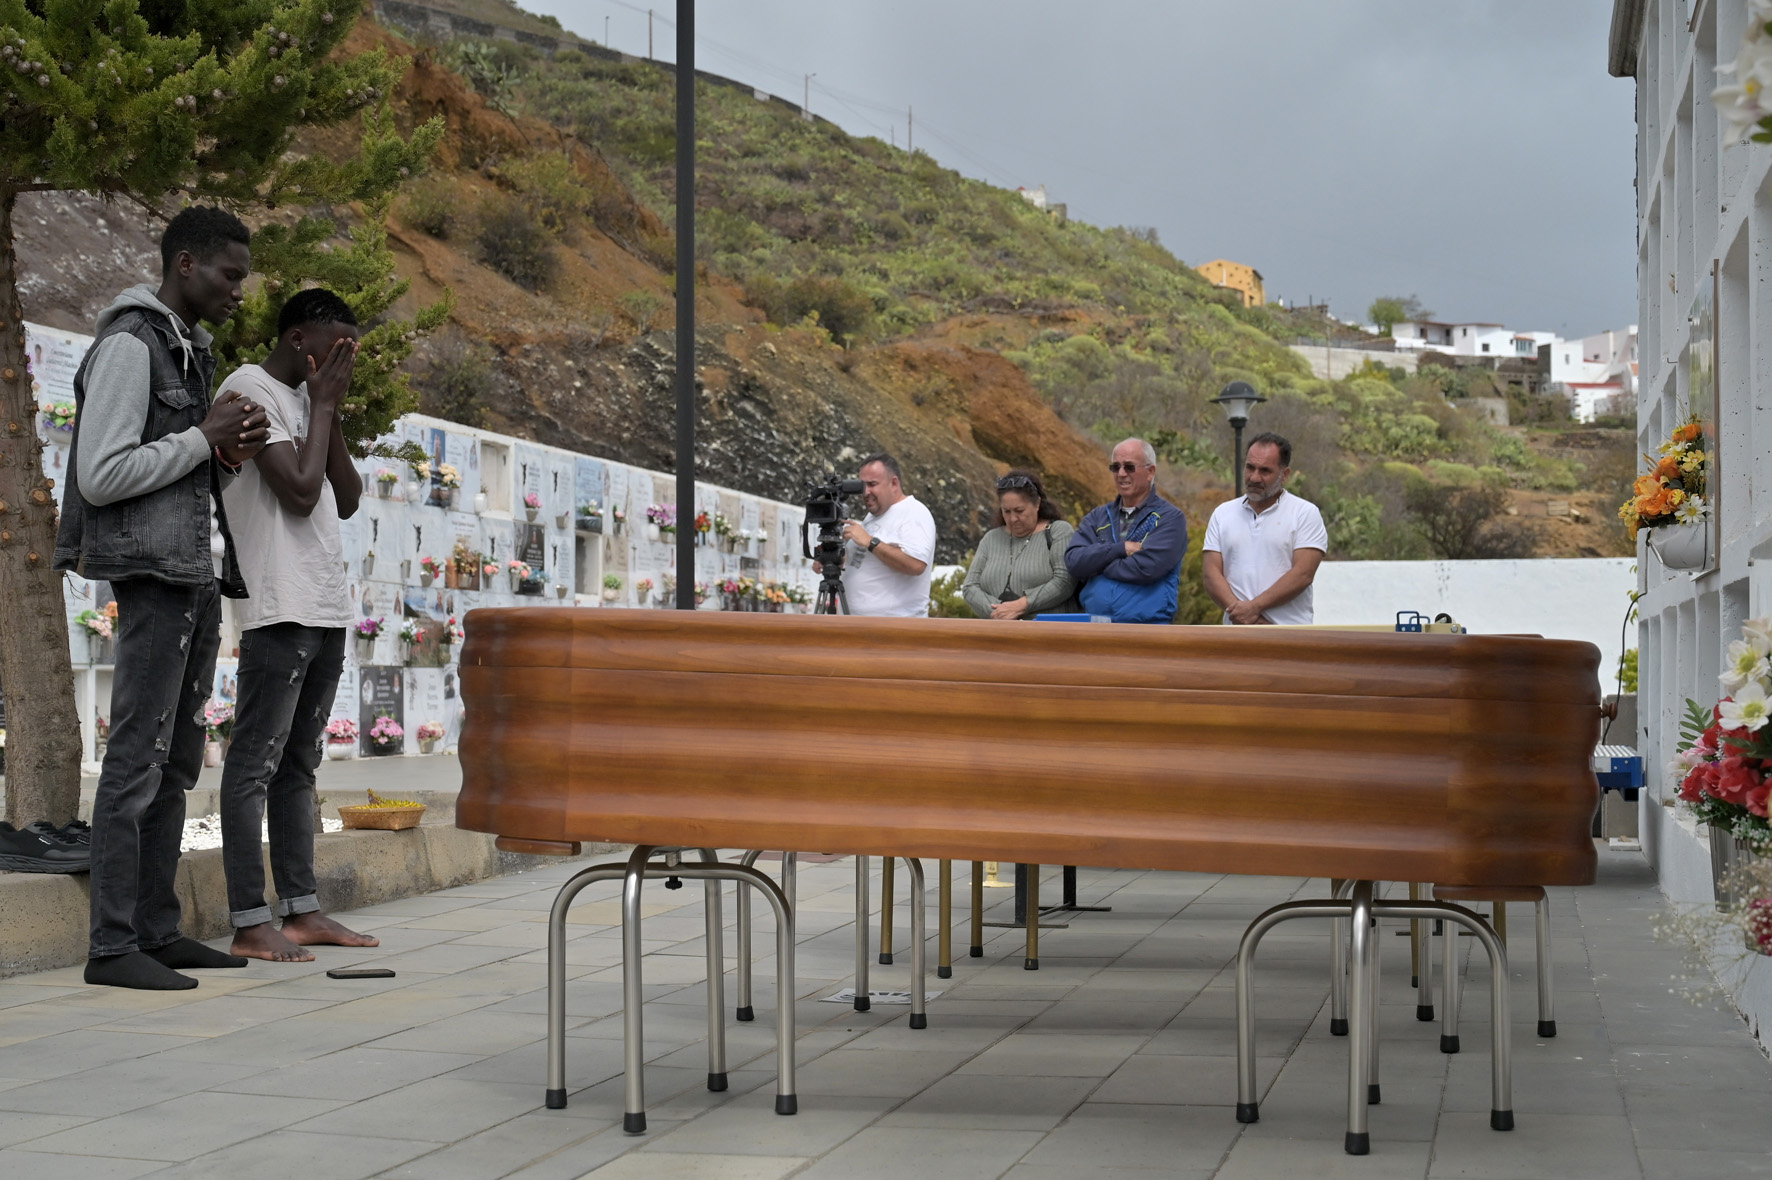 Hoy han sido enterrados los 4 inmigrantes que llegaron fallecidos el pasado martes, en una embarcación rescatada por Salvamento Marítimo